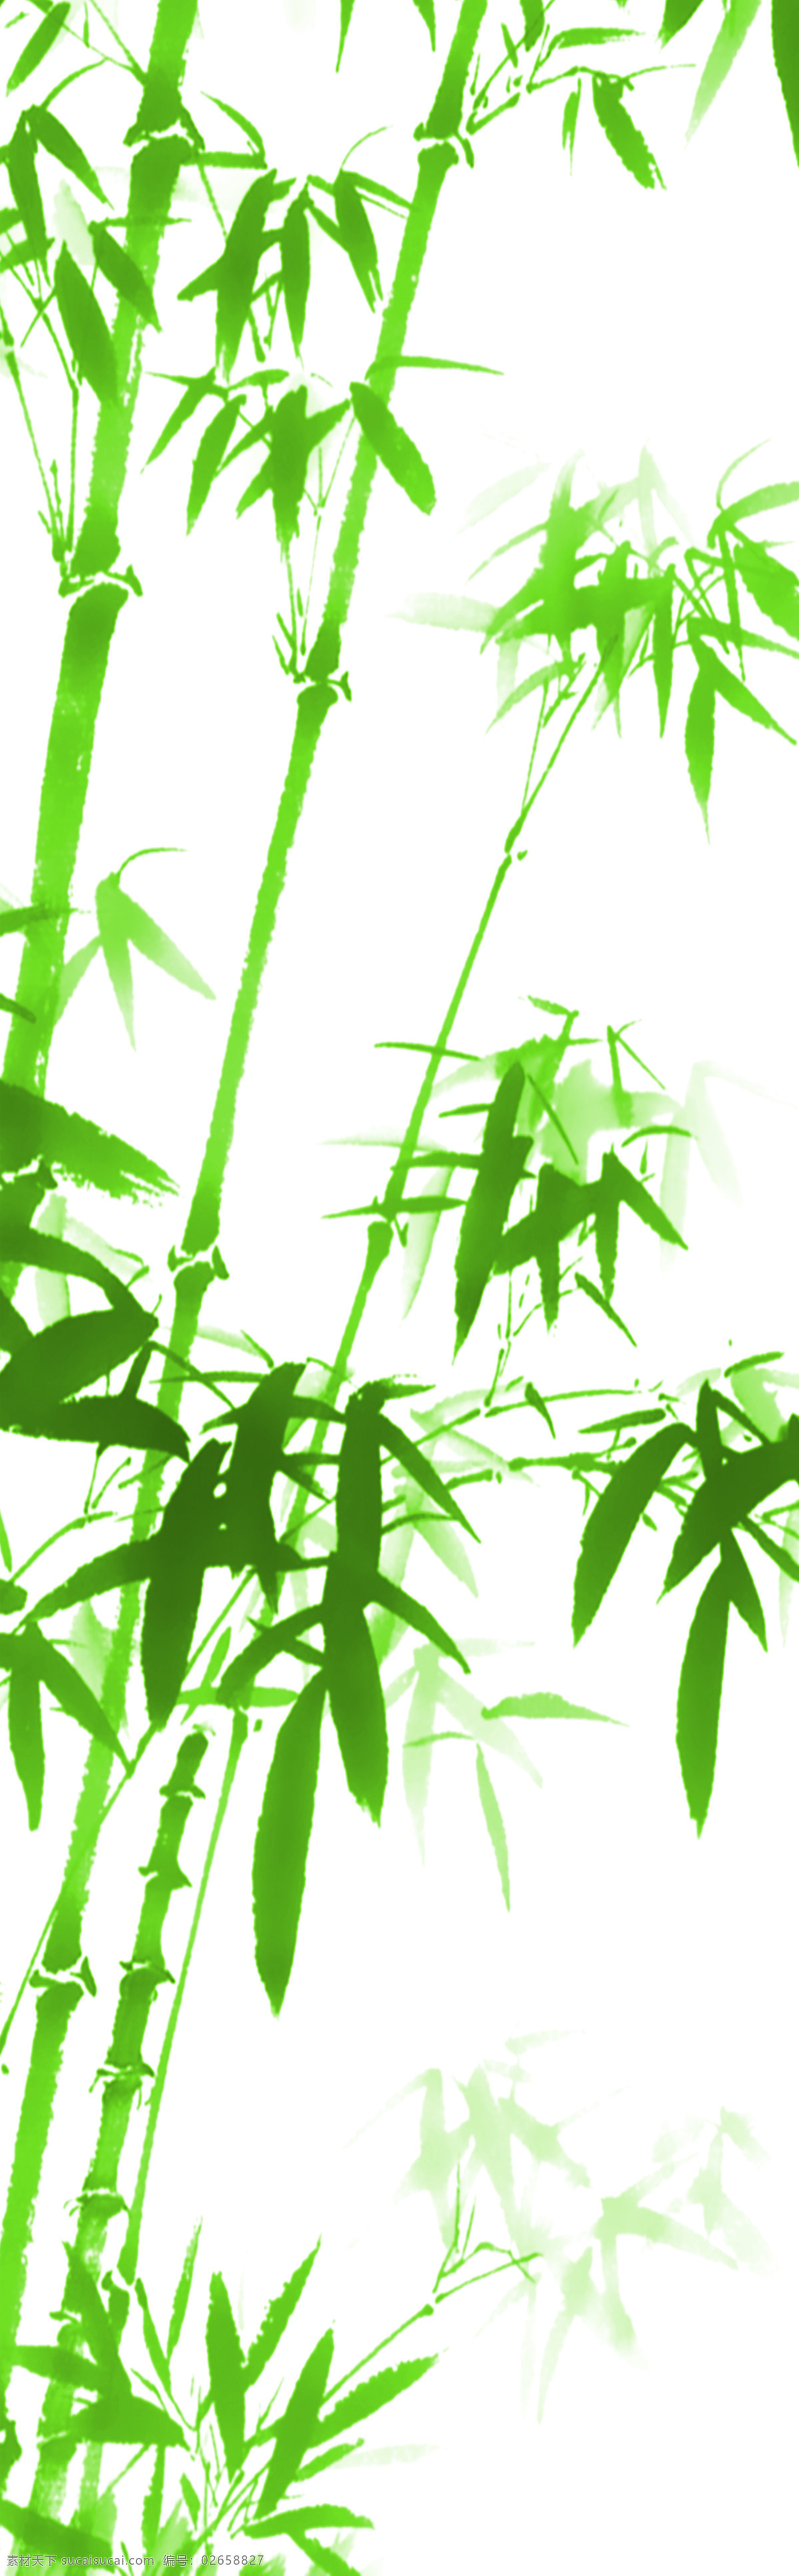 竹子 种类 竹子的种类 风景 生活 旅游餐饮